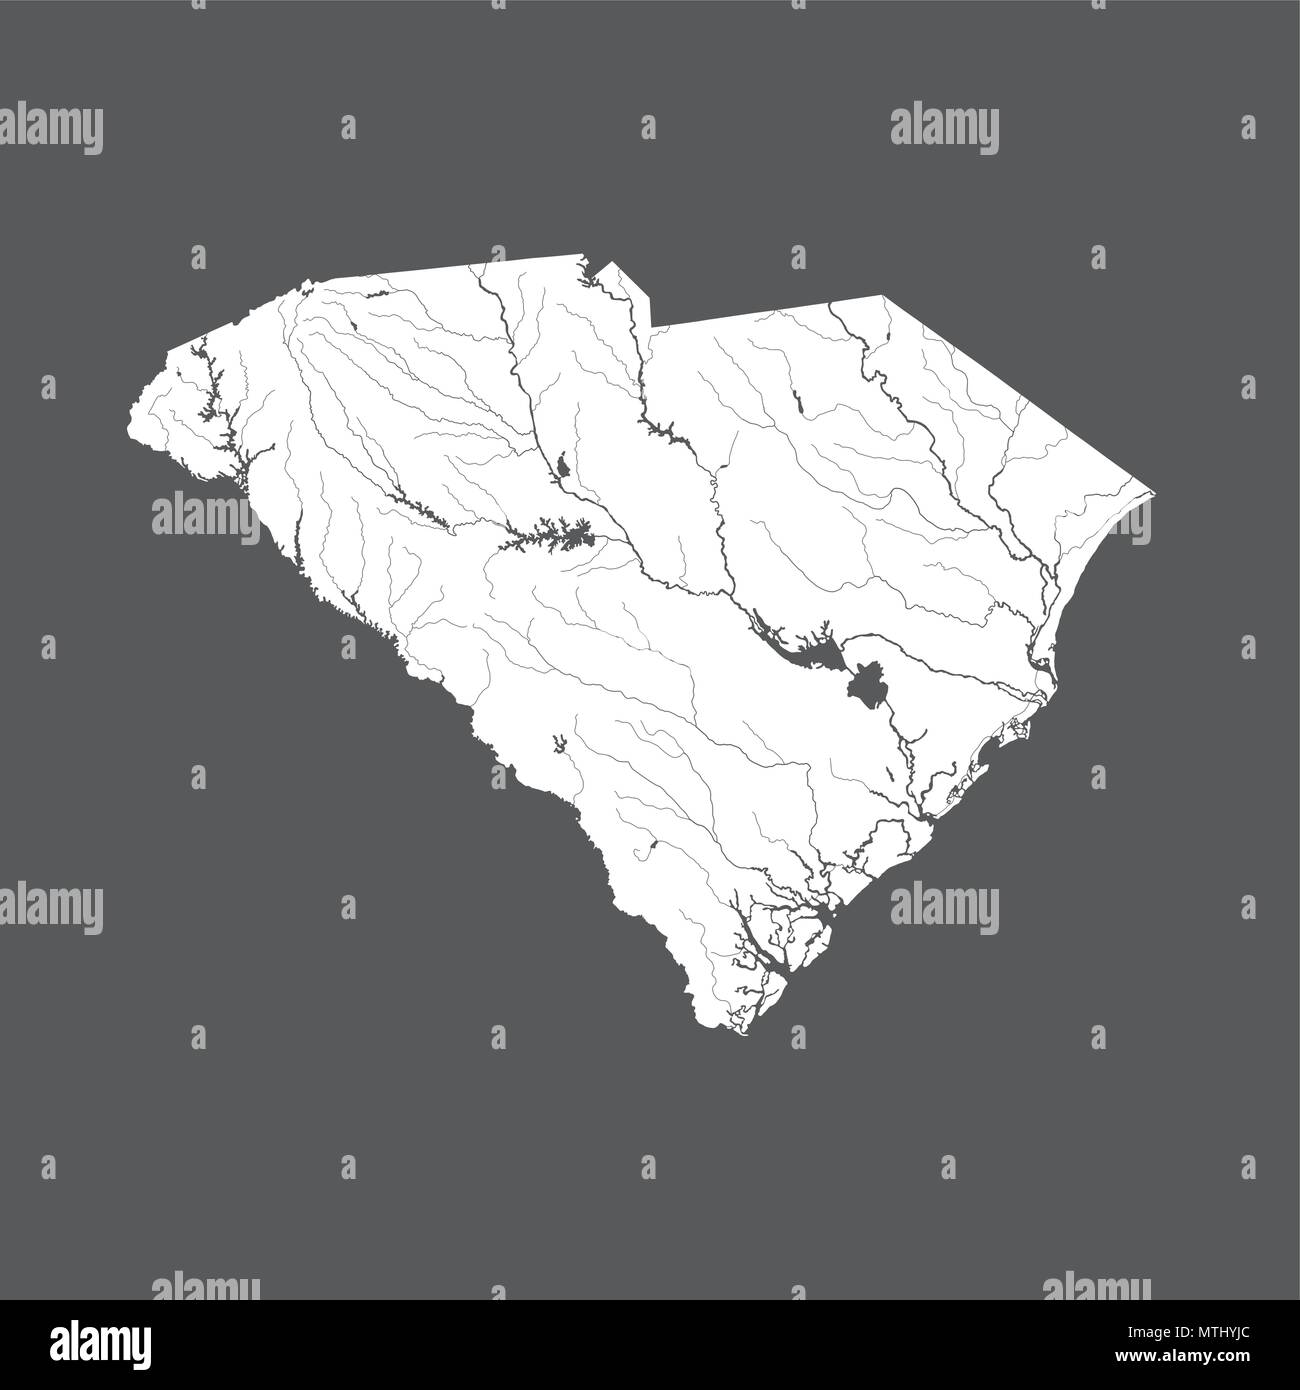 Les états américains - carte de la Caroline du Sud. Fait main. Les rivières et lacs sont indiqués. Merci de regarder mes autres images de la série cartographique - ils sont tous très Illustration de Vecteur